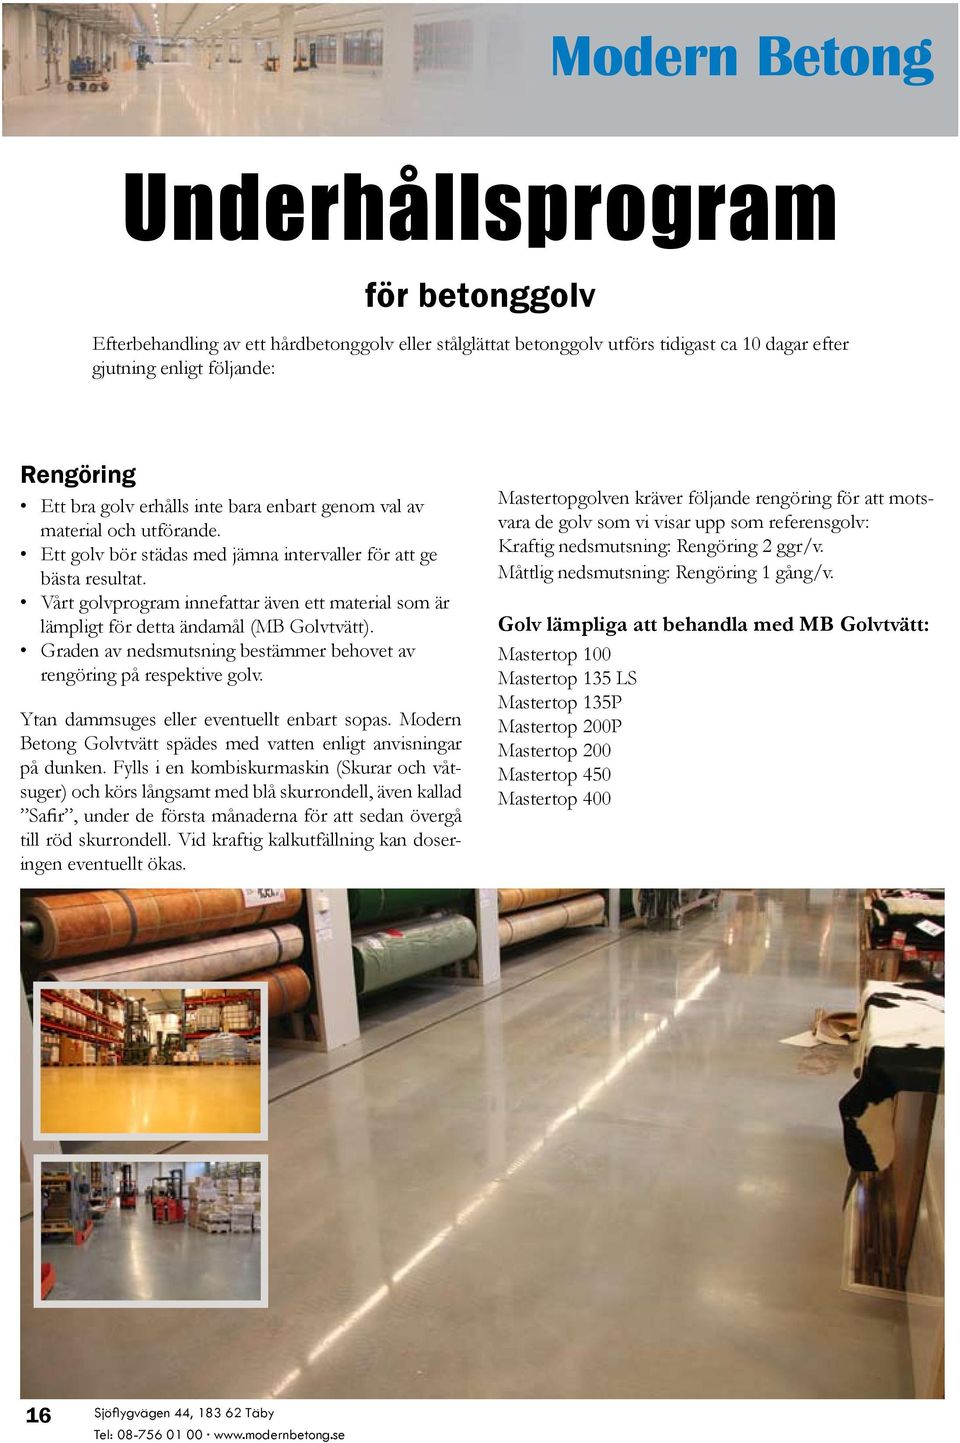 Vårt golvprogram innefattar även ett material som är lämpligt för detta ändamål (MB Golvtvätt). Graden av nedsmutsning bestämmer behovet av rengöring på respektive golv.